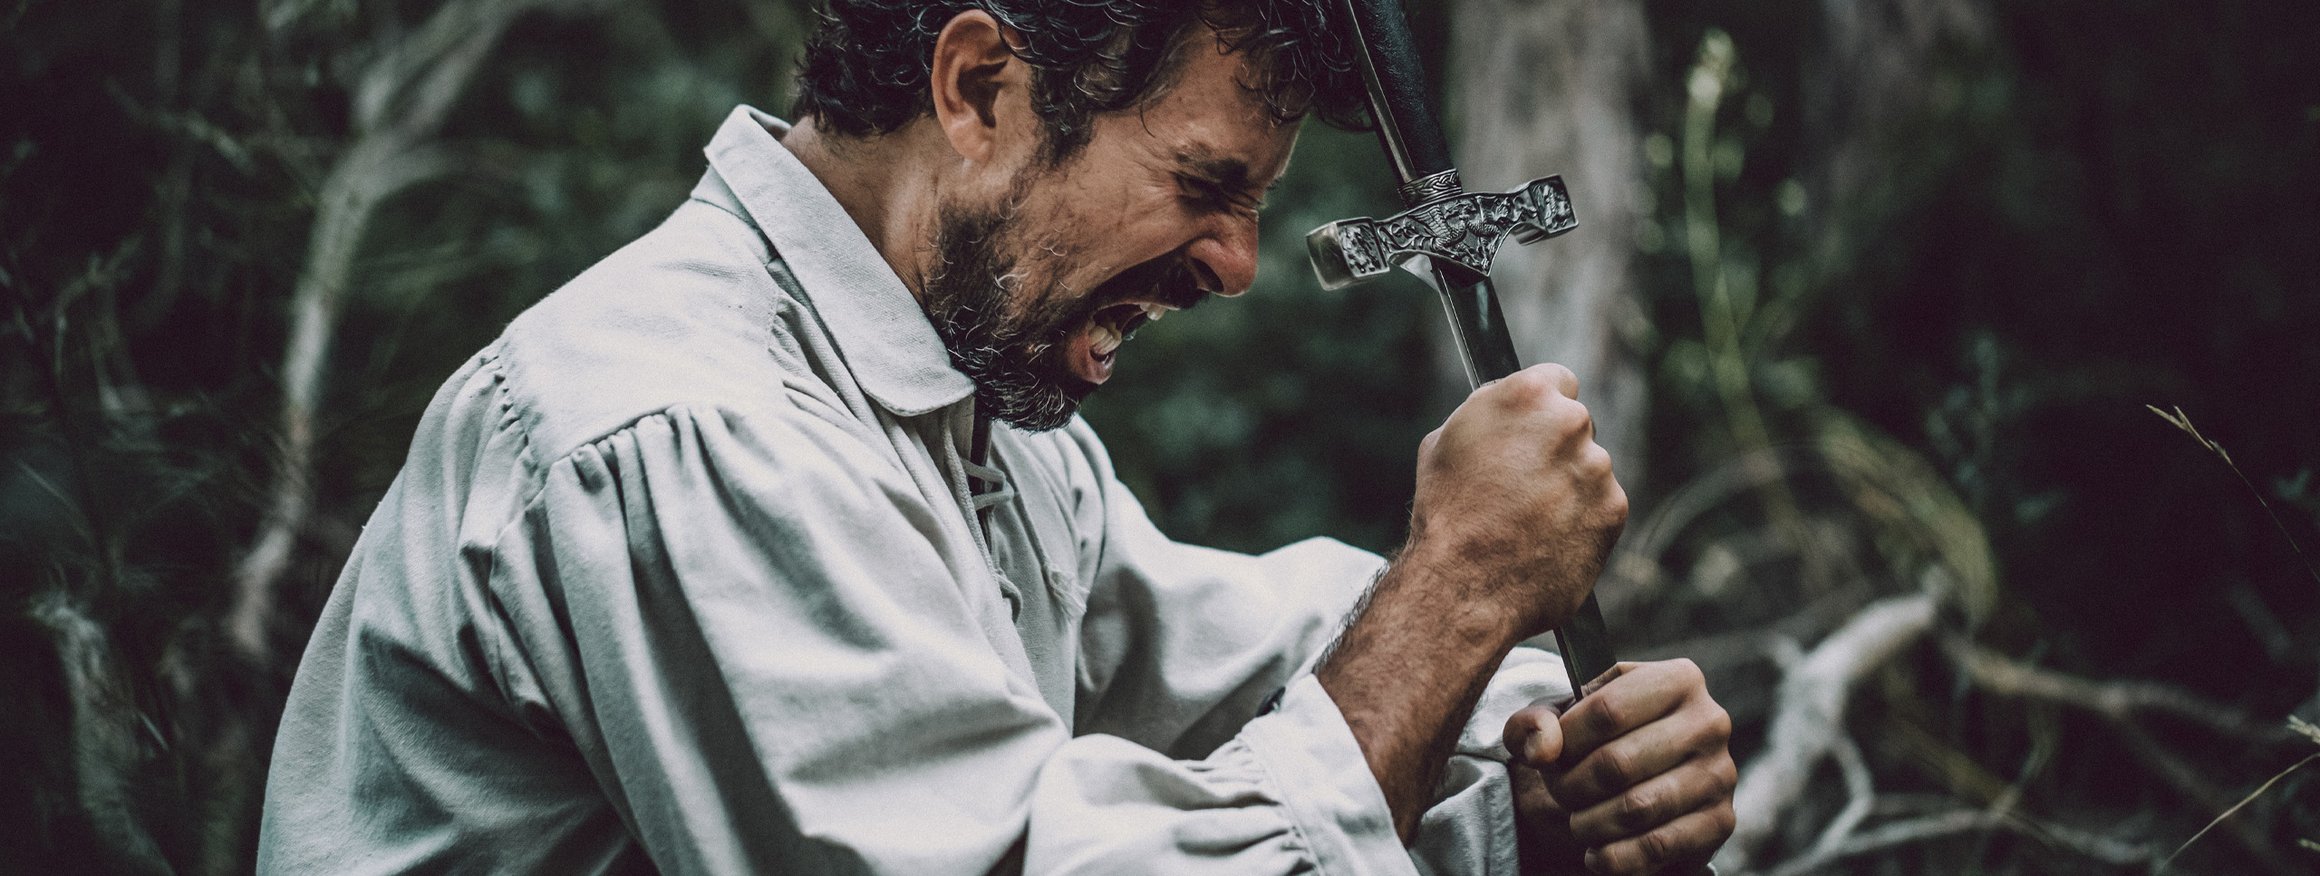 Ein Schauspieler mit einem altertümlichen Hemd umfasst verzweifelt ein Schwert, wobei er seinen Emotionen freien Lauf lässt und in seiner Rolle aufgeht